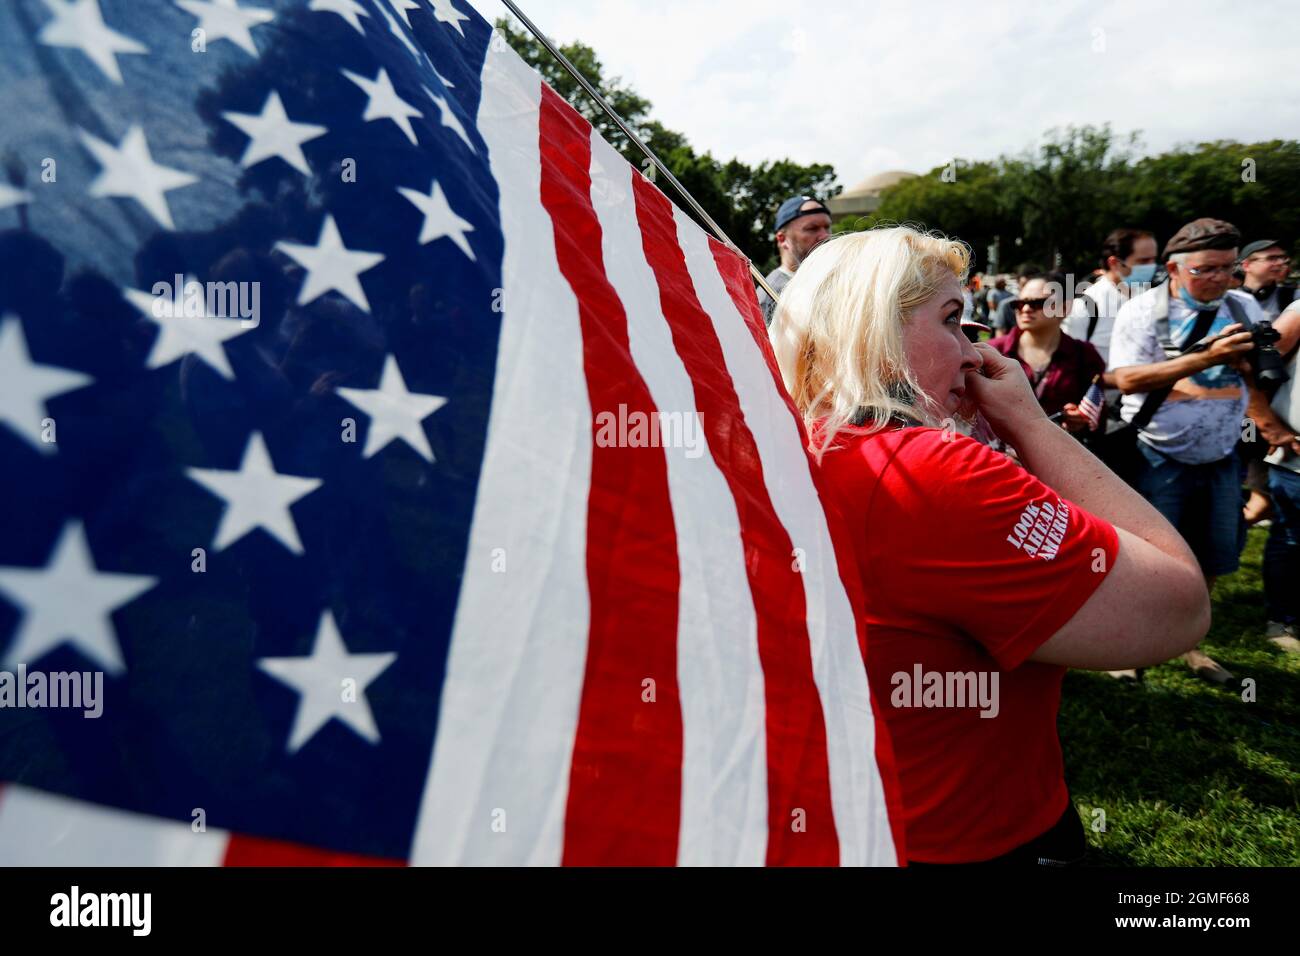 Diane, de New York, du groupe « look Ahead America », essuie les yeux tandis qu'elle détient un drapeau américain tout en protestant au nom des accusés poursuivis lors de l'attaque du 6 janvier contre le Capitole, à Washington, États-Unis, le 18 septembre 2021. REUTERS/Jim Bourg Banque D'Images